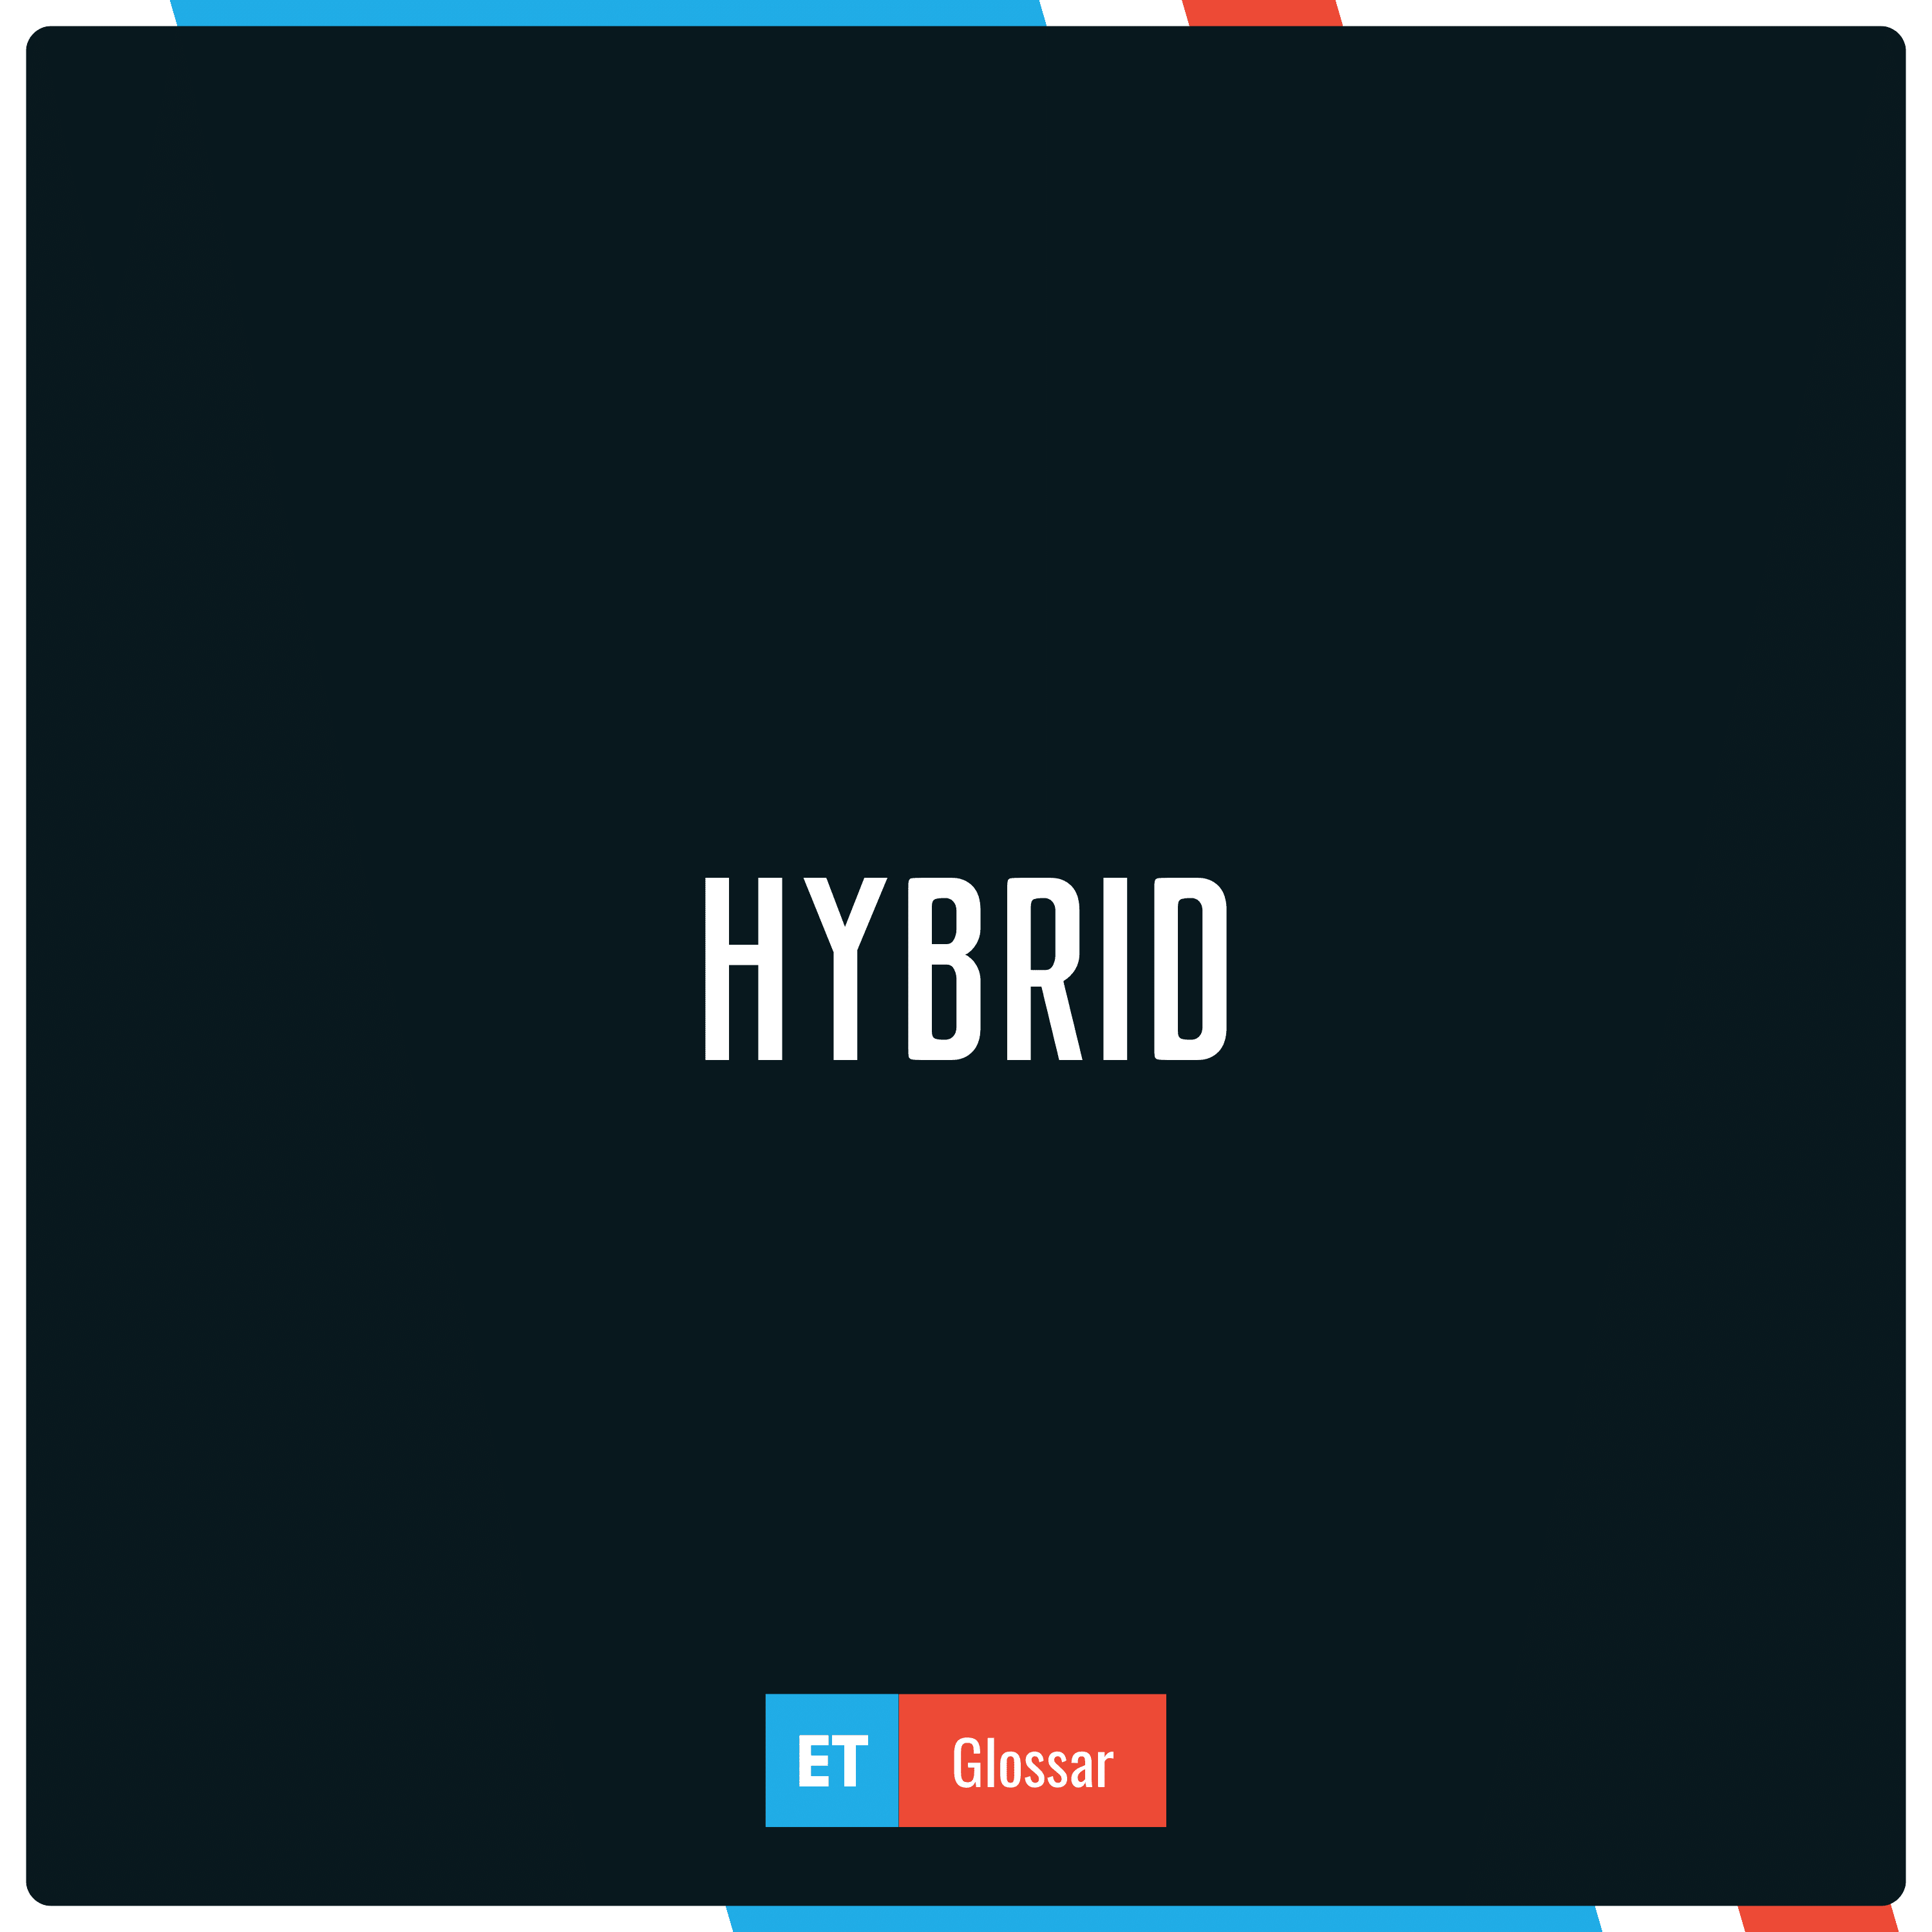 Der Begriff Hybrid einfach erklärt im Exciting Tech Glossar